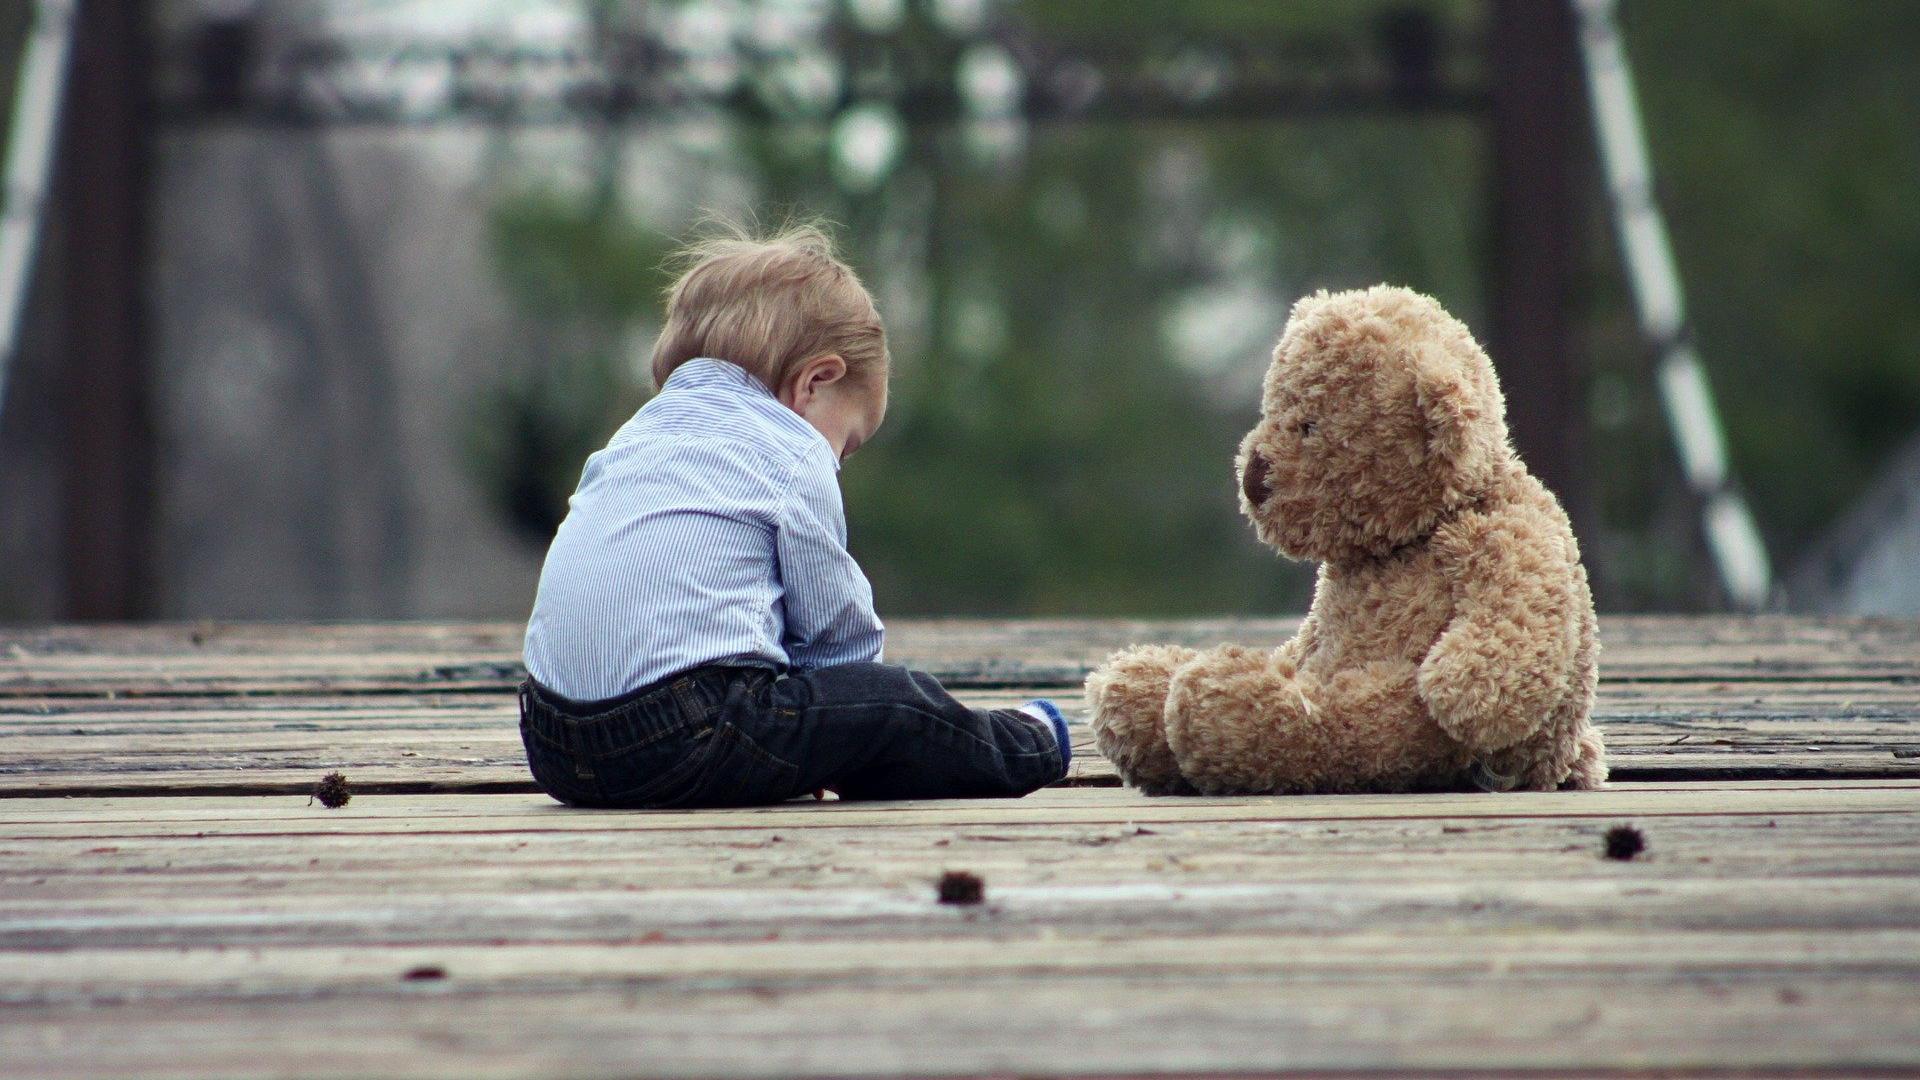 Stimmungsbild zum Beitrag: Es wird ein Kleinkind mit einem Teddybär abgebildet.